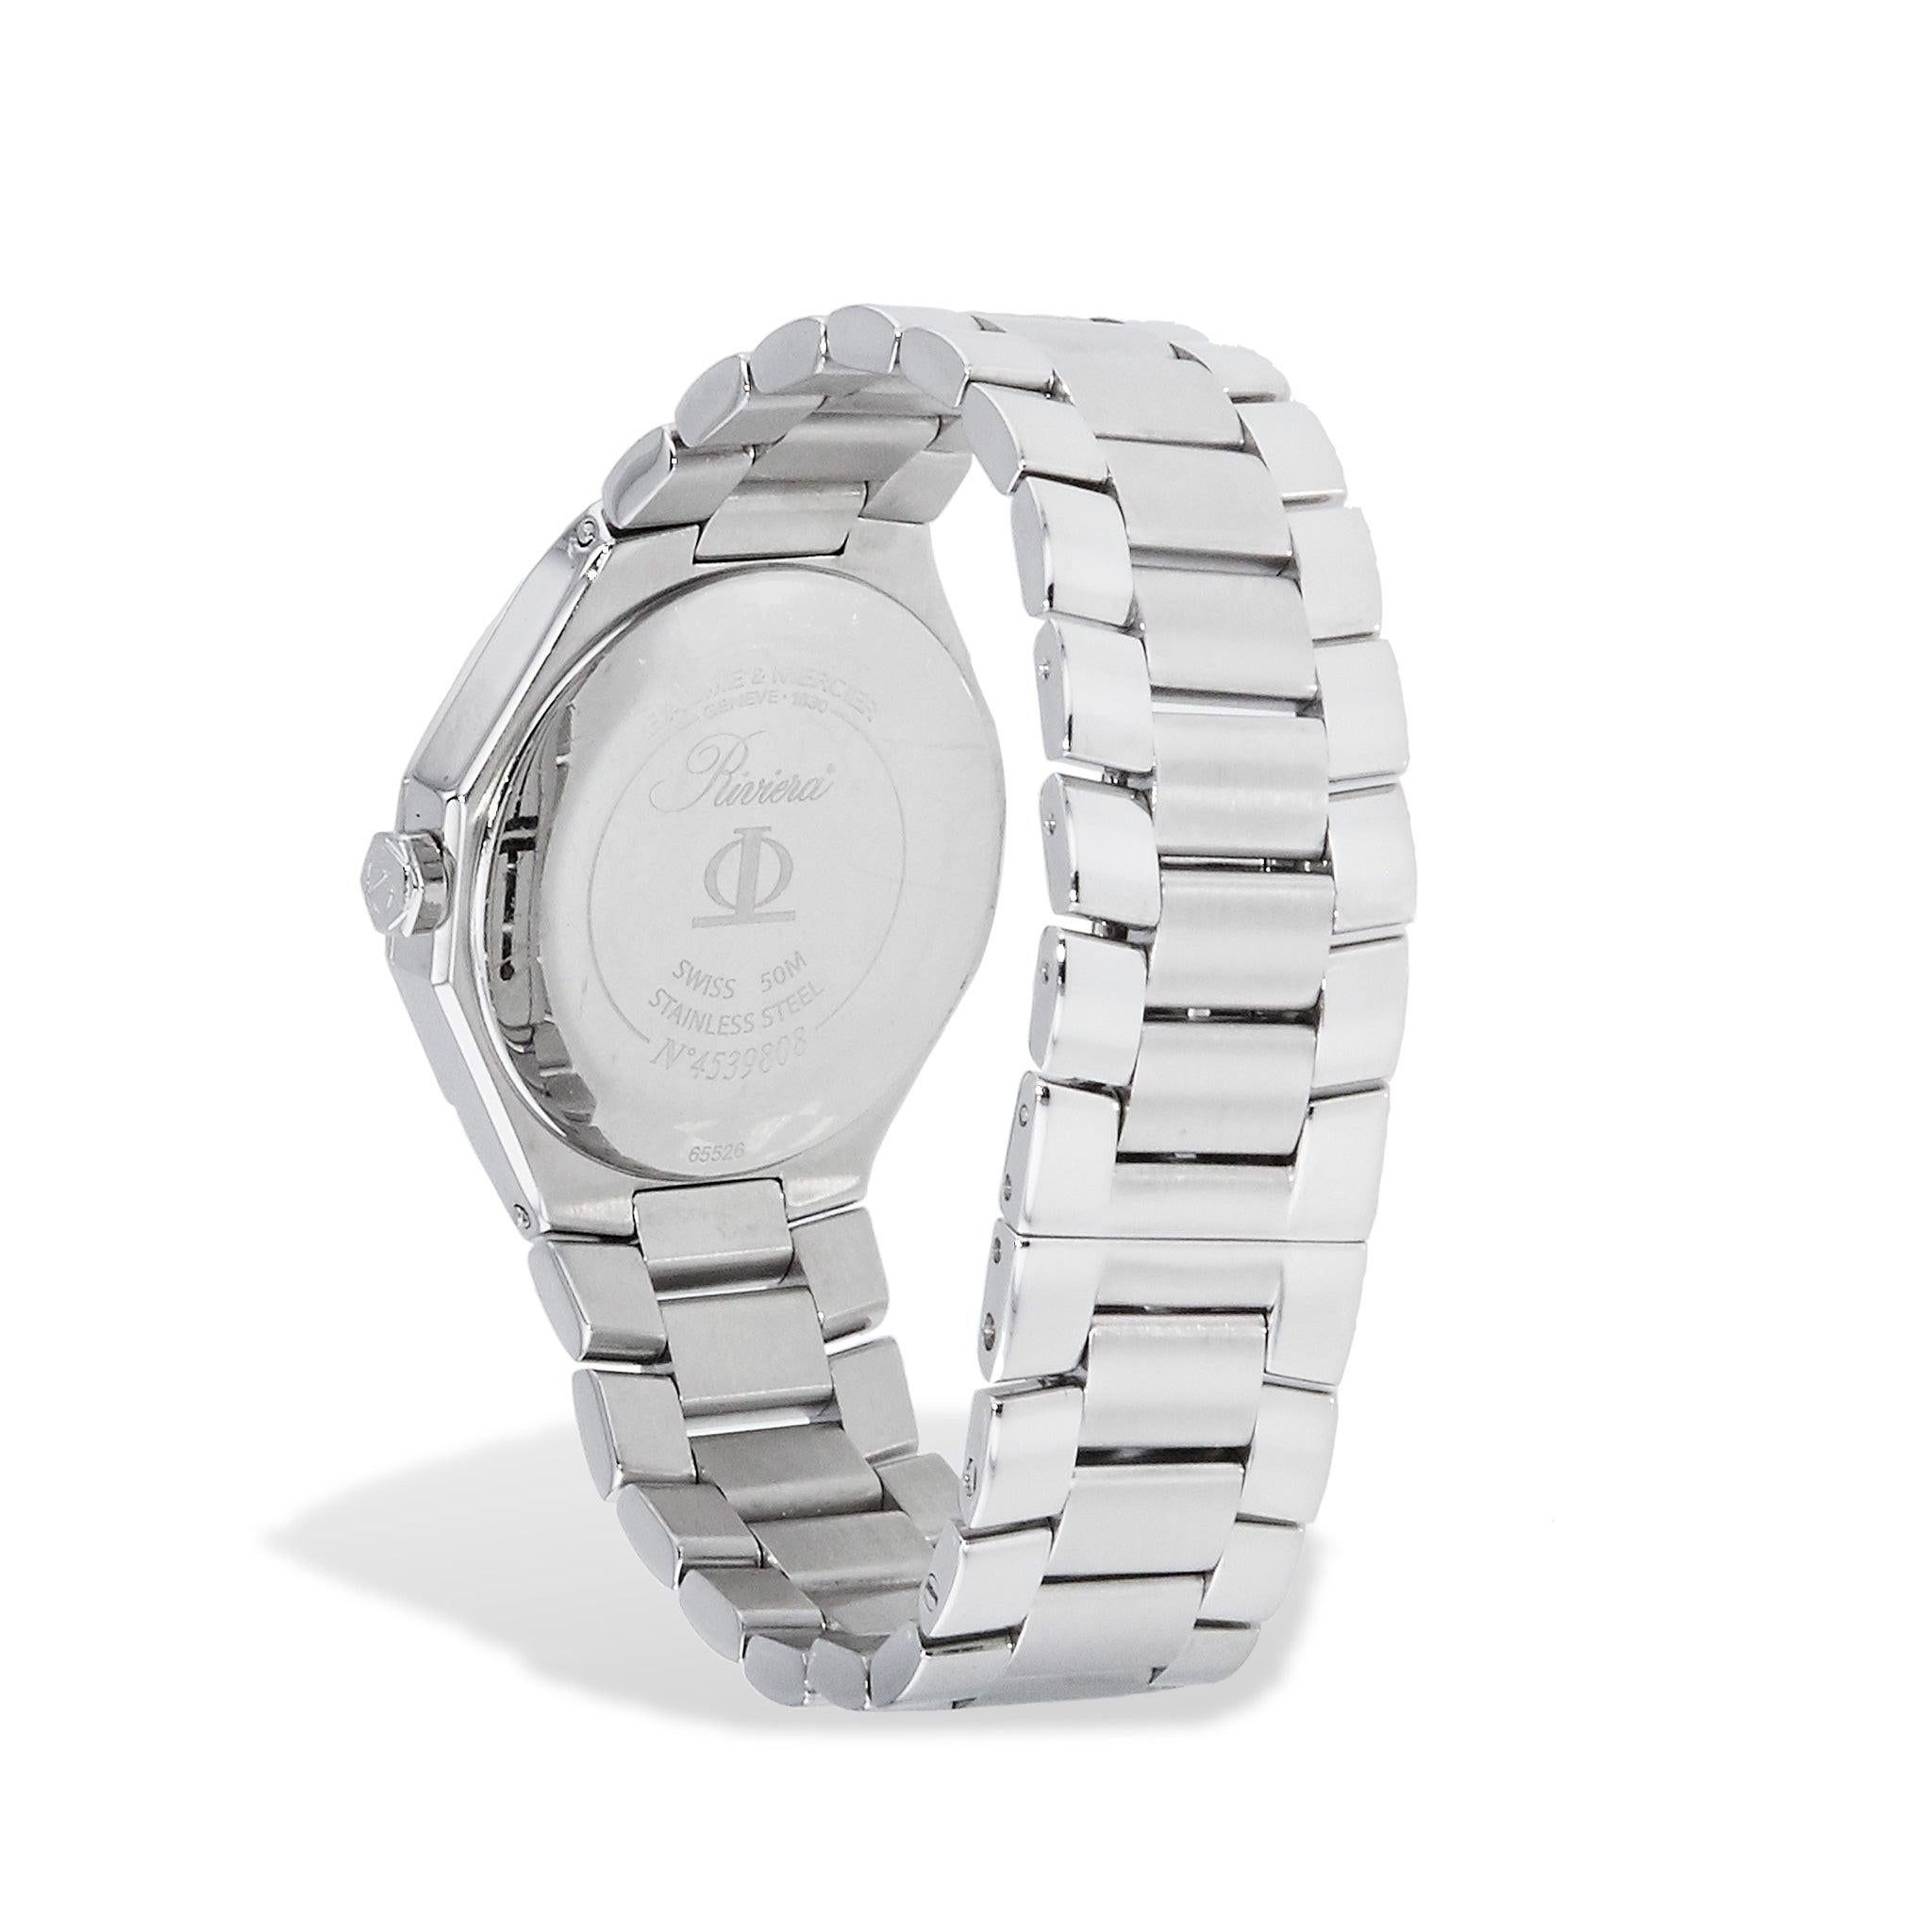 Die Estate Collection Baume & Mercier Riviera Watch, Modell 65526, verfügt über eine Lünette aus Perlmutt und Diamanten, kratzfestes Saphirglas, eine Edelstahlkonstruktion und ein Quarzwerk.
 
Estate Collection Baume & Mercier Riviera Uhr.
Modell